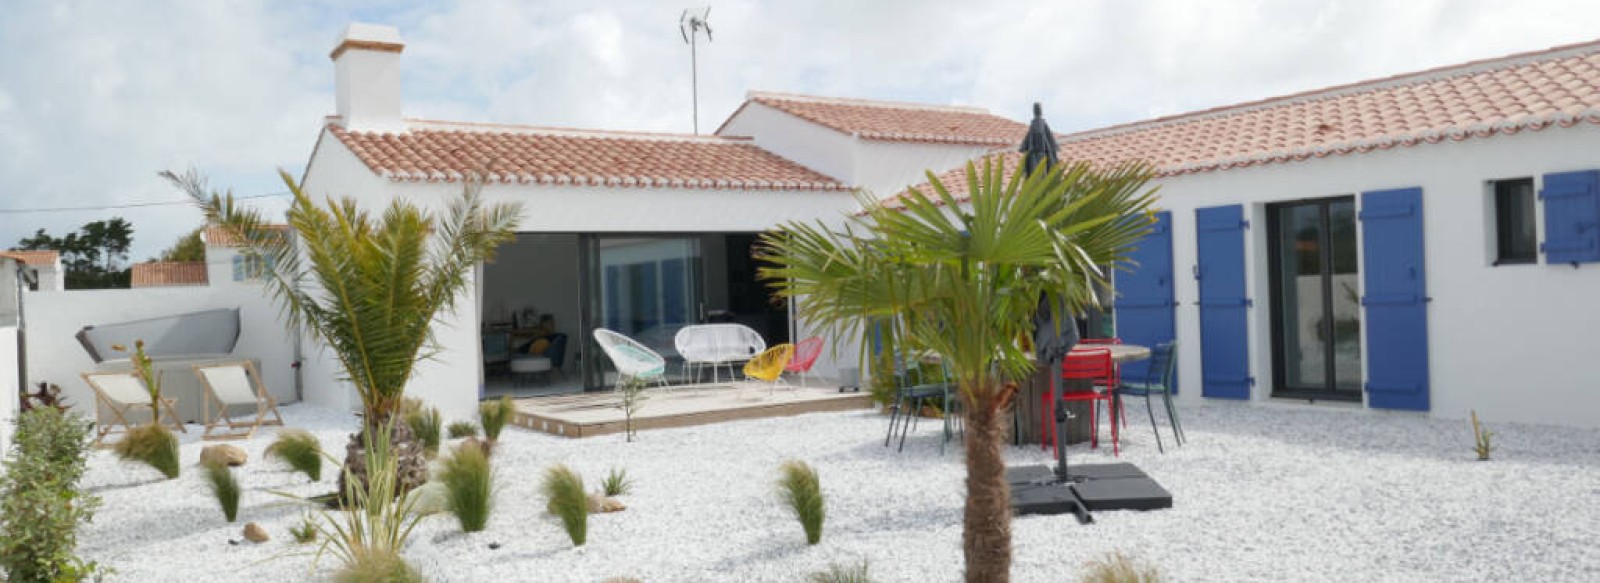 Maison de vacances avec spa a Noirmoutier en l'ile